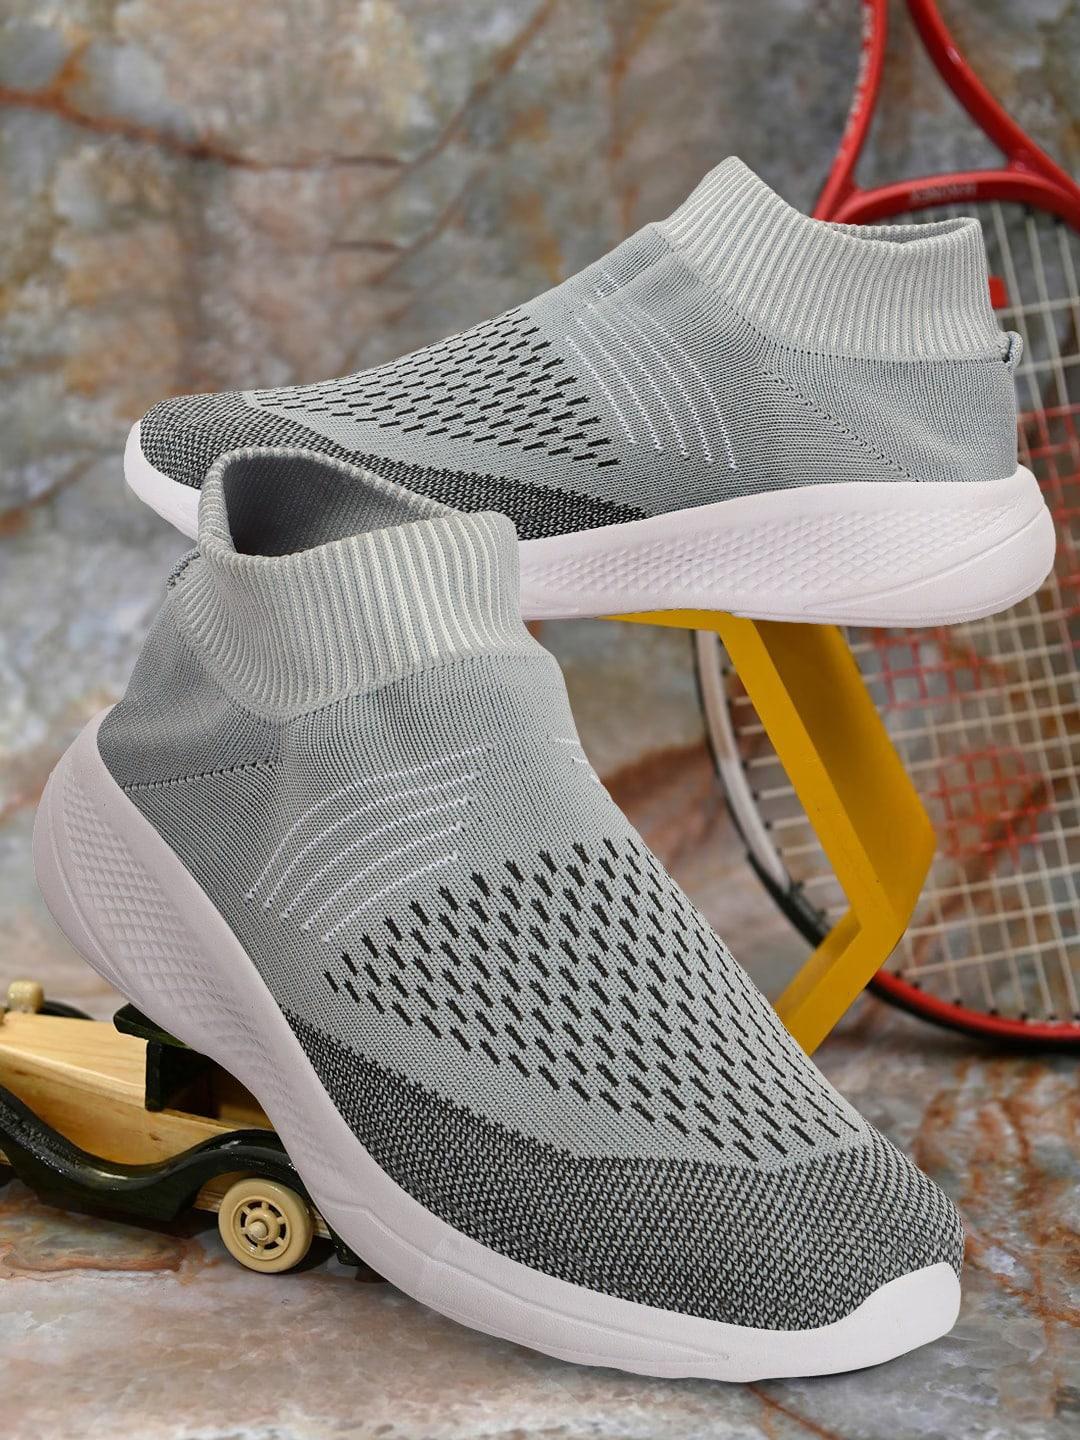 hrx-by-hrithik-roshan-men-grey-woven-design-lightweight-slip-on-sneakers